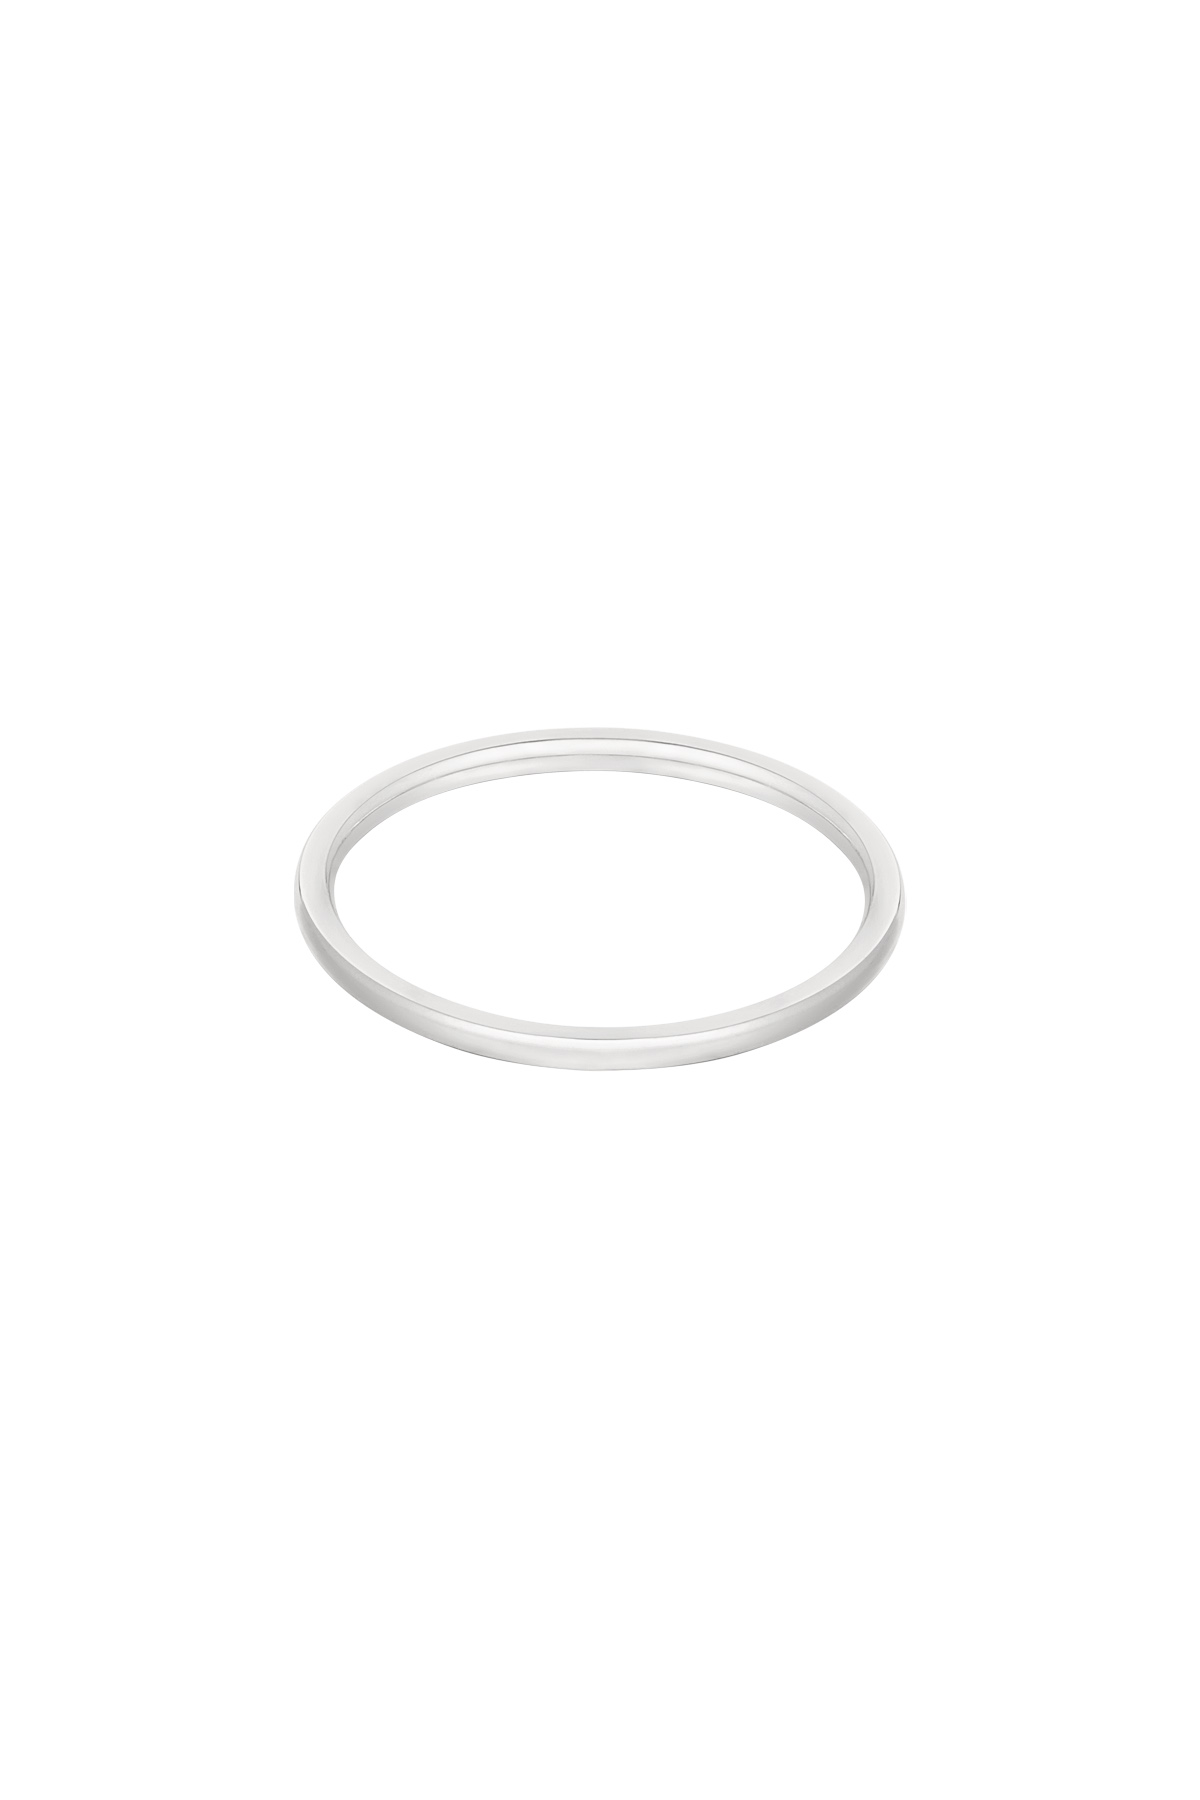 Ring minimalistisch - Silber